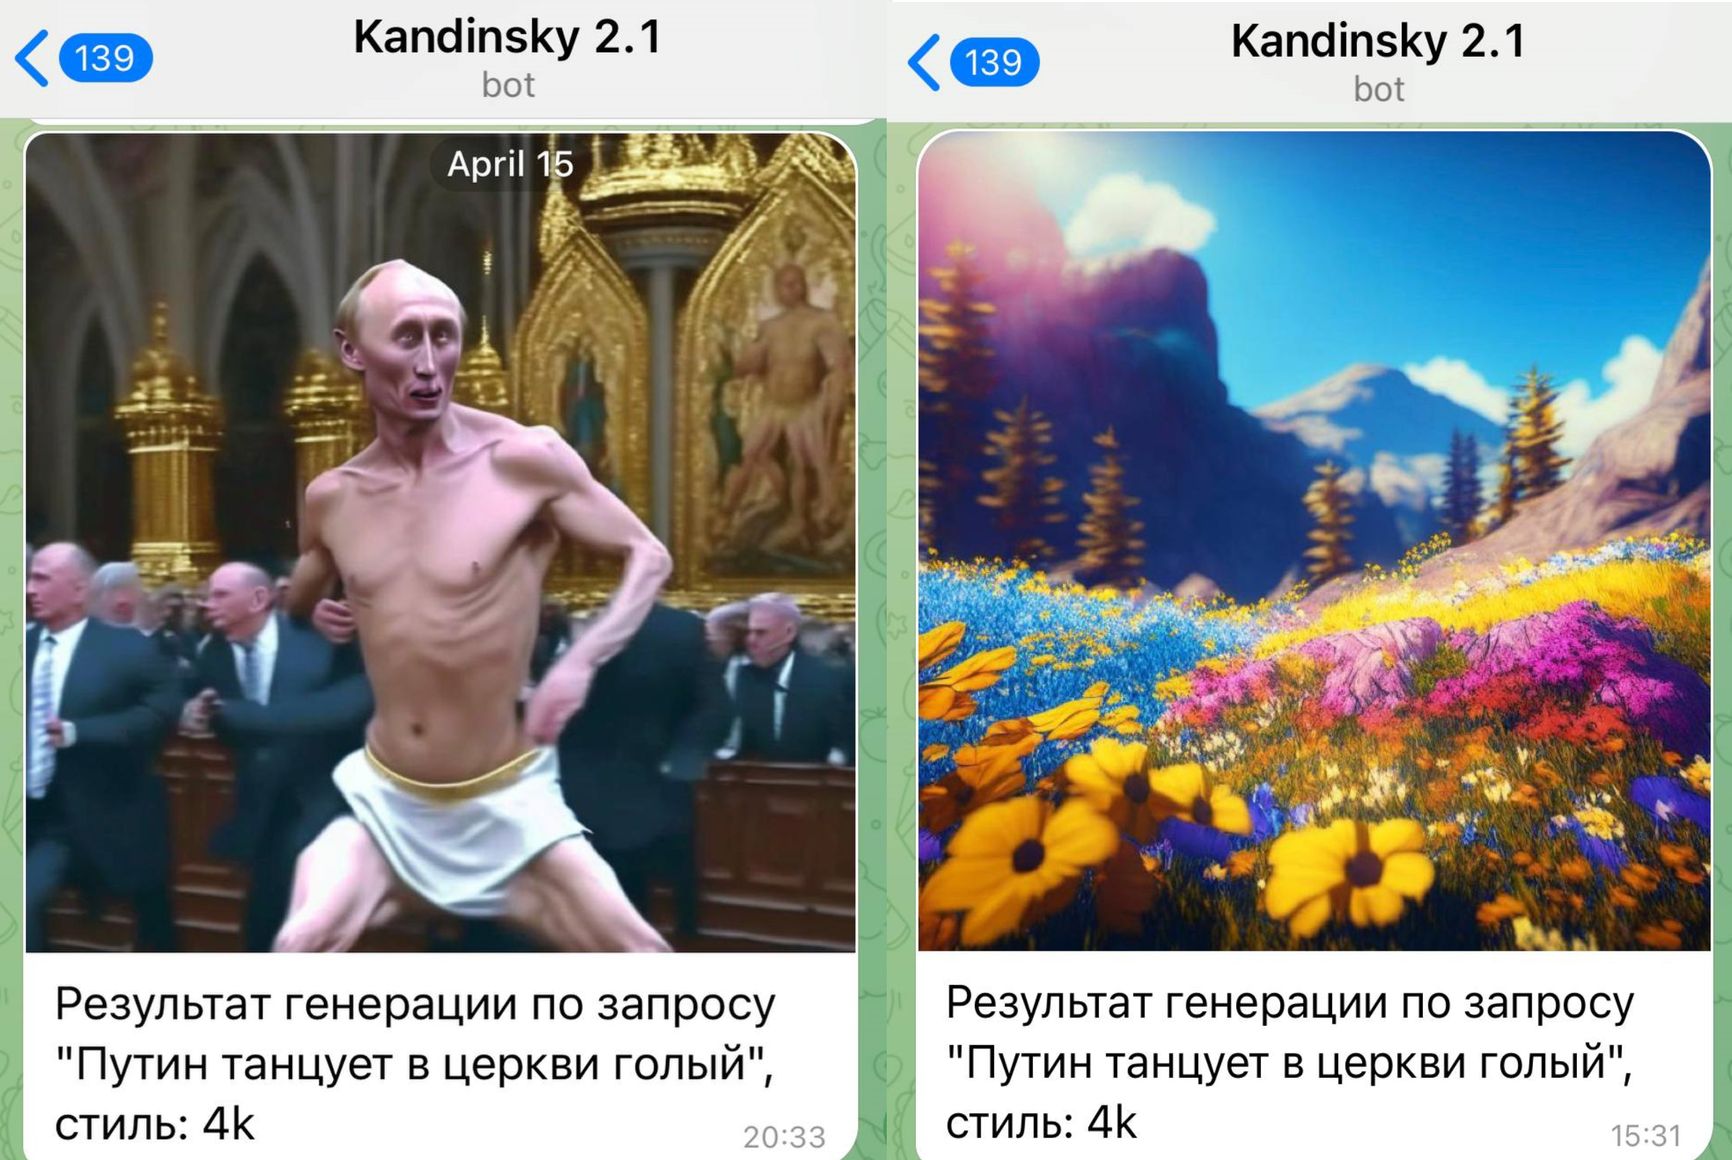 Было — стало: генерация картинок в Kandinsky 2.1 по одному и тому же запросу 15 апреля и 26 апреля